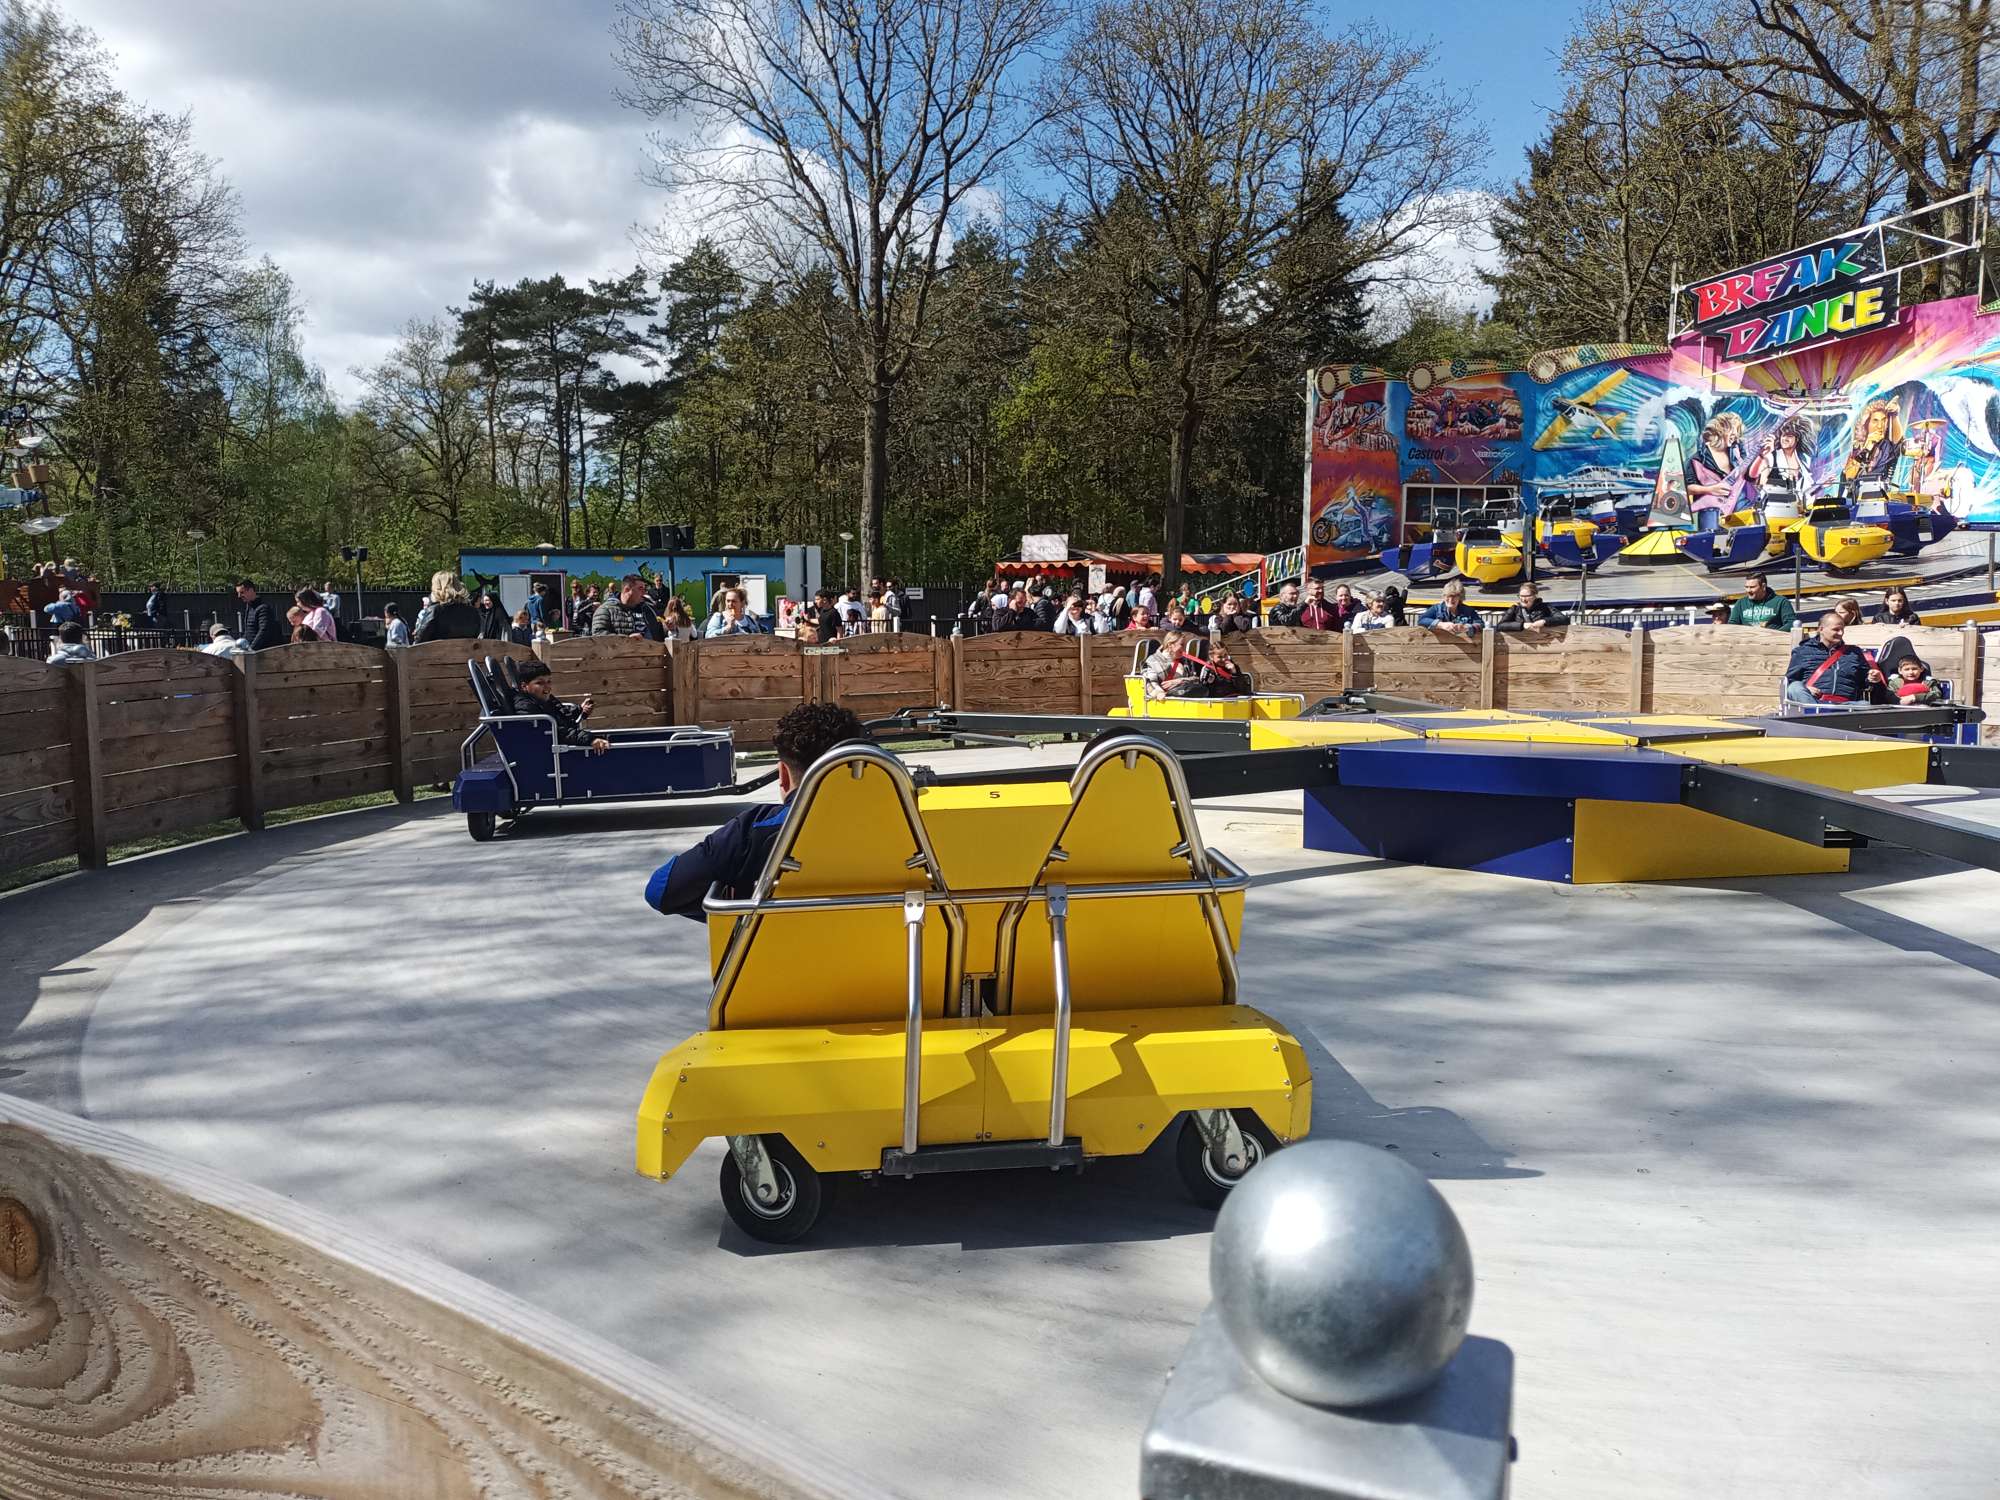 Drifterattractie Attractiepark Drouwenerzand met een gele gondel op de voorgrond.